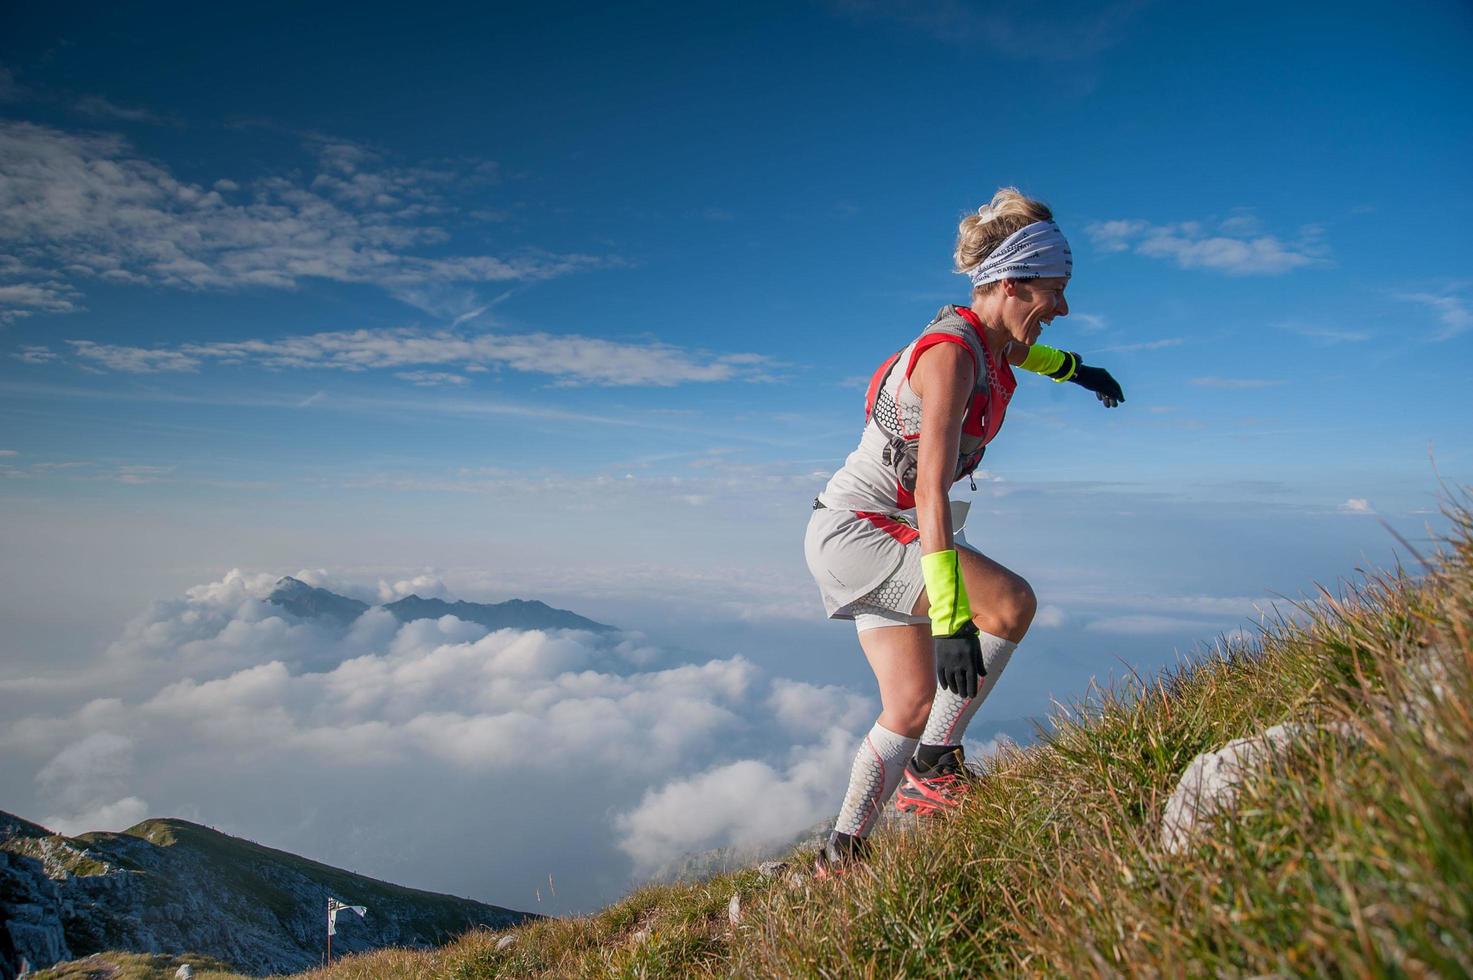 serina italia 2 de septiembre de 2018 carrera competitiva extrema en las montañas de 50 km foto